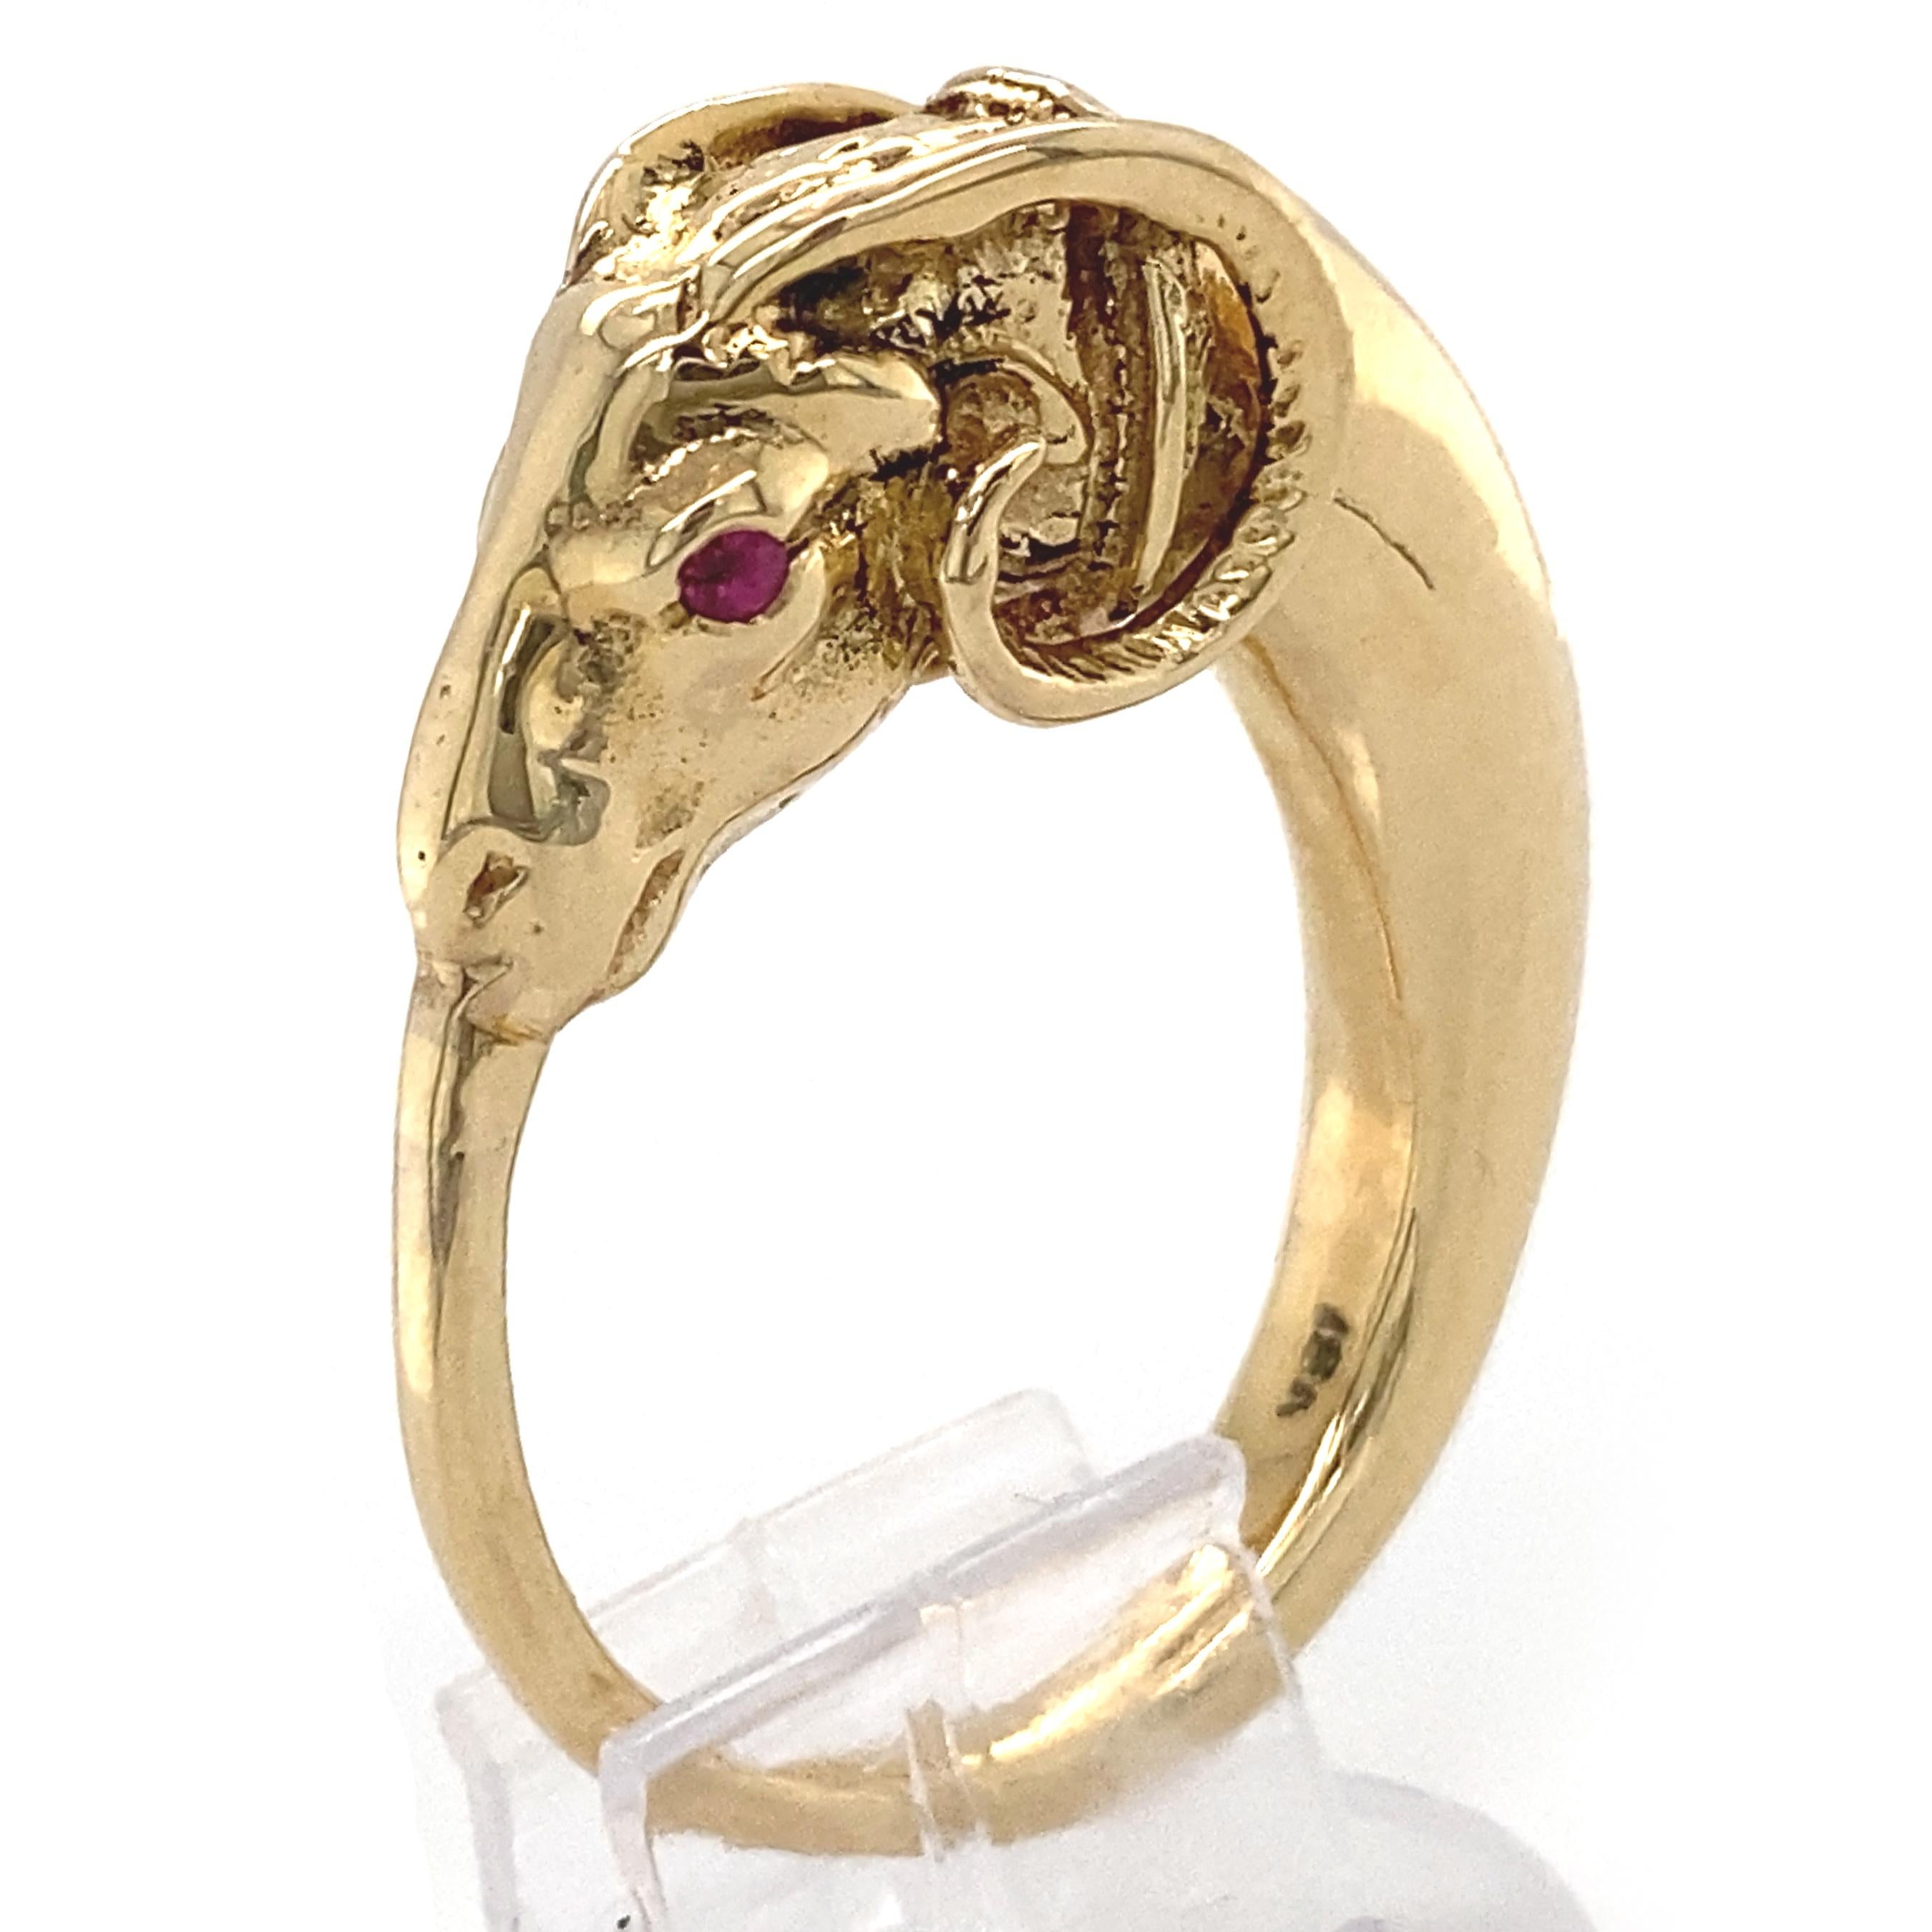 Dieser auffällige figürliche Ring ist eine Art modifizierter Ouroboros - das antike runde Symbol einer Schlange, die ihren eigenen Schwanz frisst - nur dass die Schlange hier den Kopf eines Widders hat.  Dieses skurrile Sammelsurium von Motiven